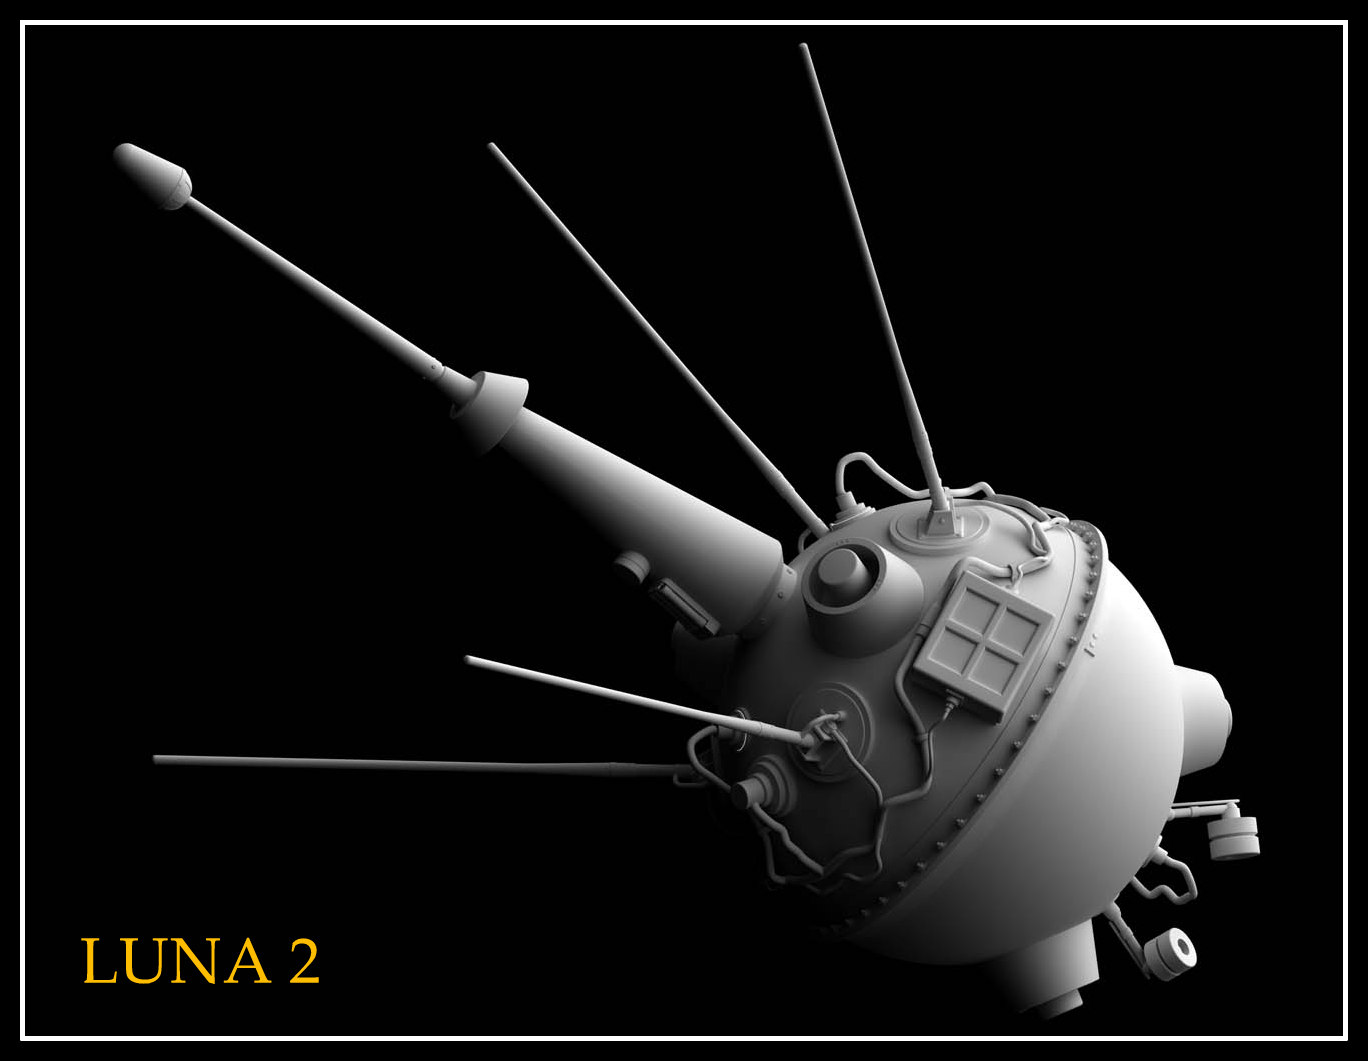 АМС Луна 1. Автрматическаямежпланетнаястанциялуна2. АМС Луна 2. Советская межпланетная станция «Луна-1». Луна 2 000